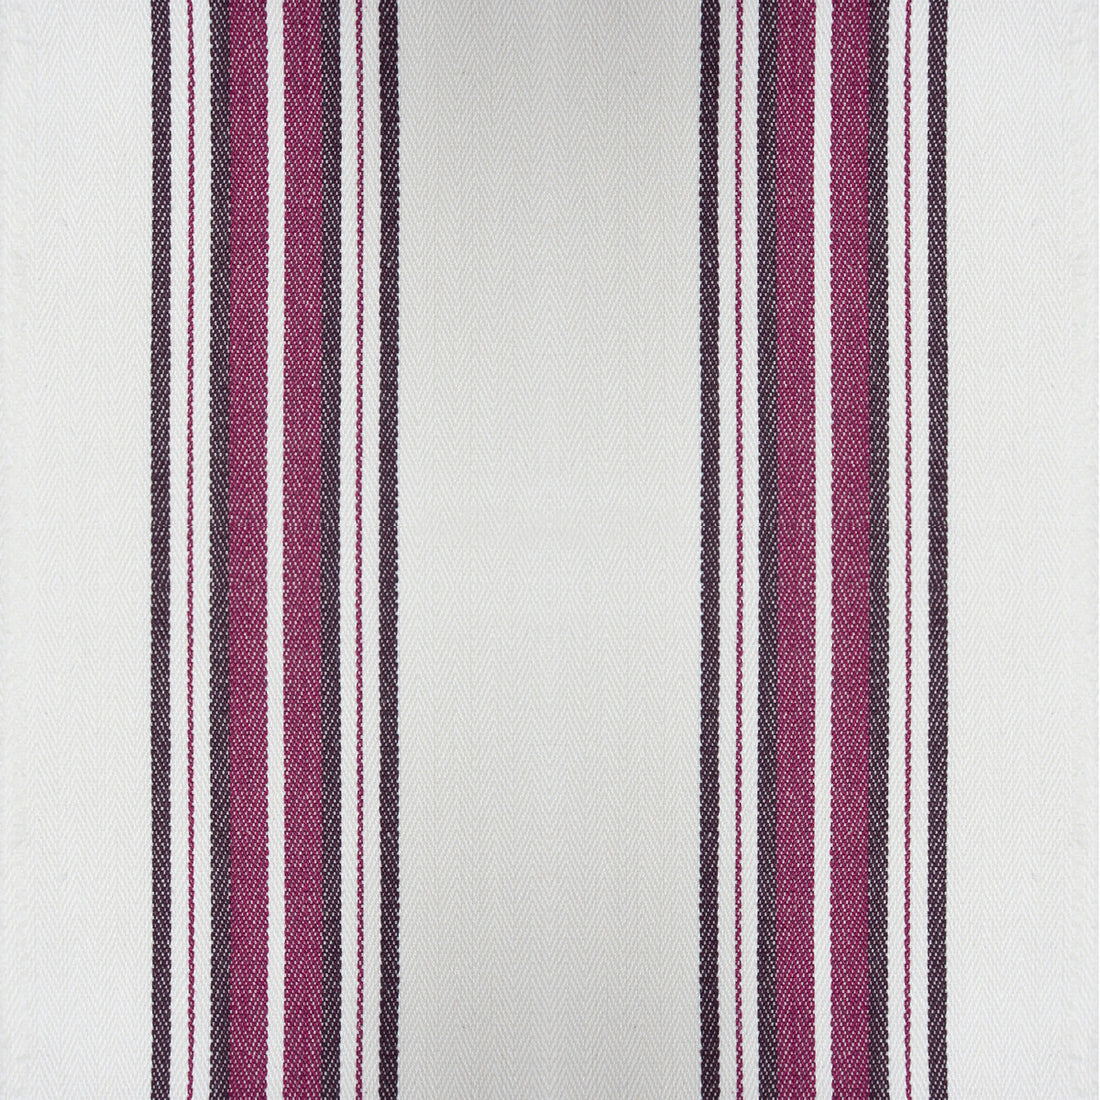 Nueva York fabric in vino color - pattern GDT5573.005.0 - by Gaston y Daniela in the Gaston Luis Bustamante collection